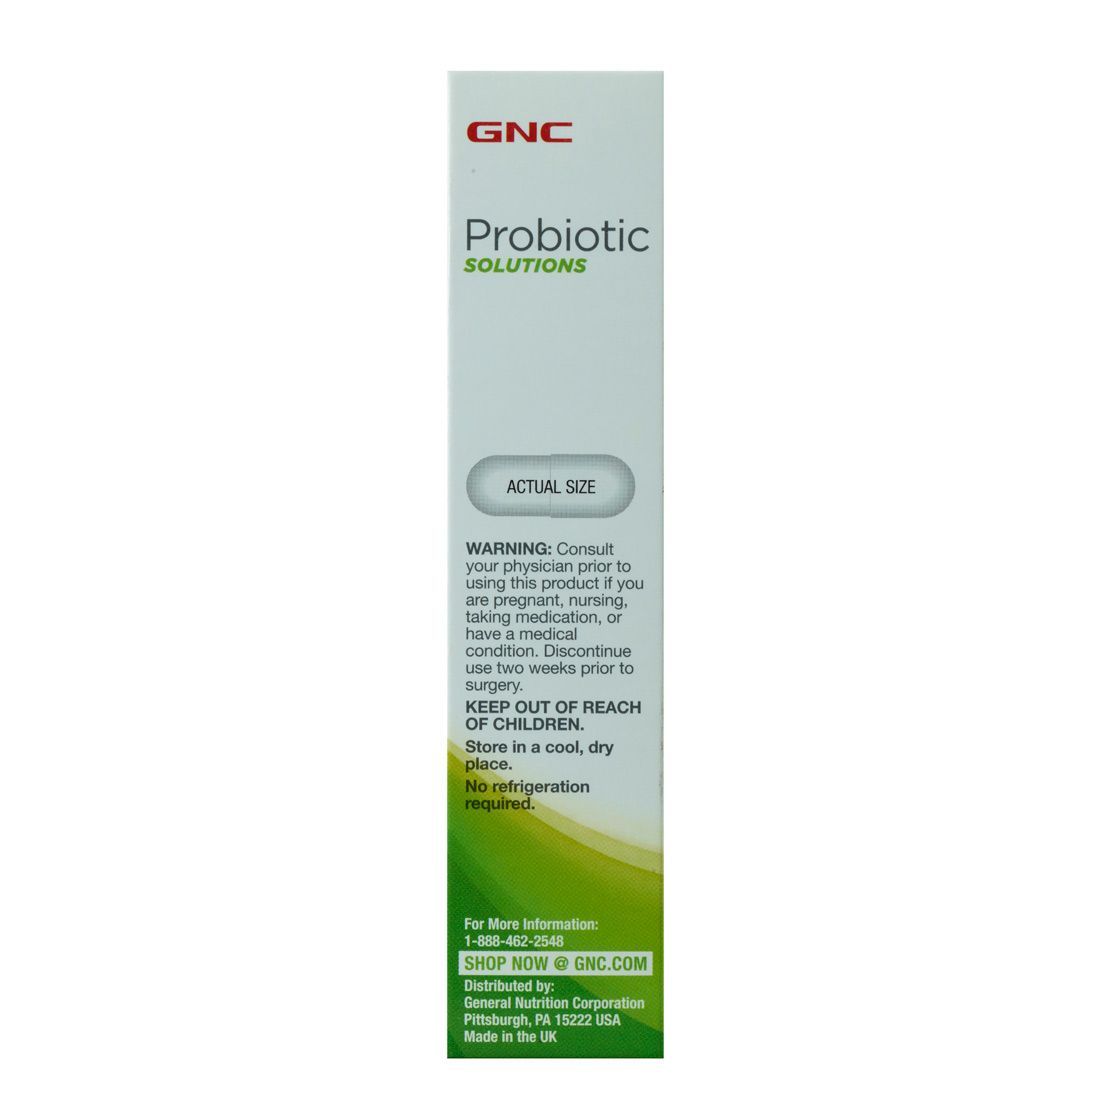 GNC Probiotic Solutions with 25 Billion CFUs - 